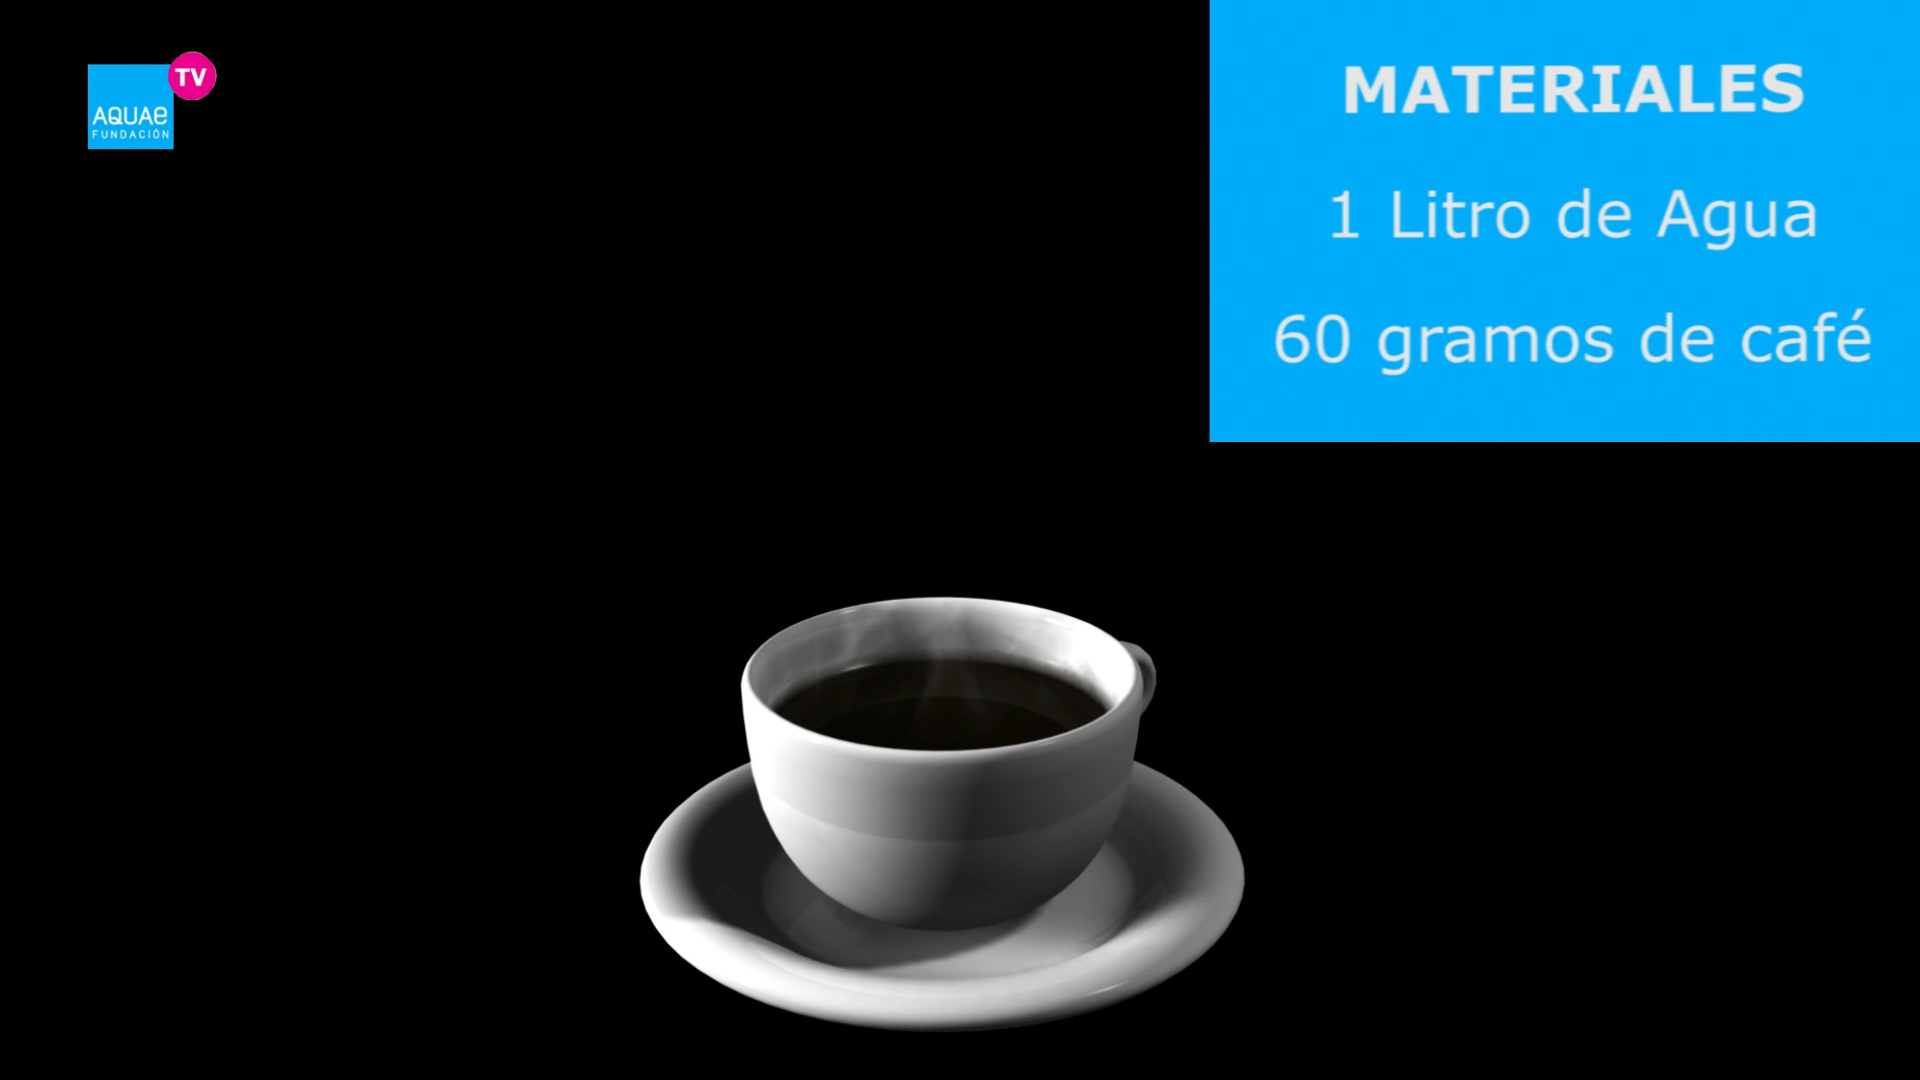 El siguiente vídeo nos muestra cómo hacer un café perfecto y qué variables tenemos que tener en cuenta, como la proporción del agua.